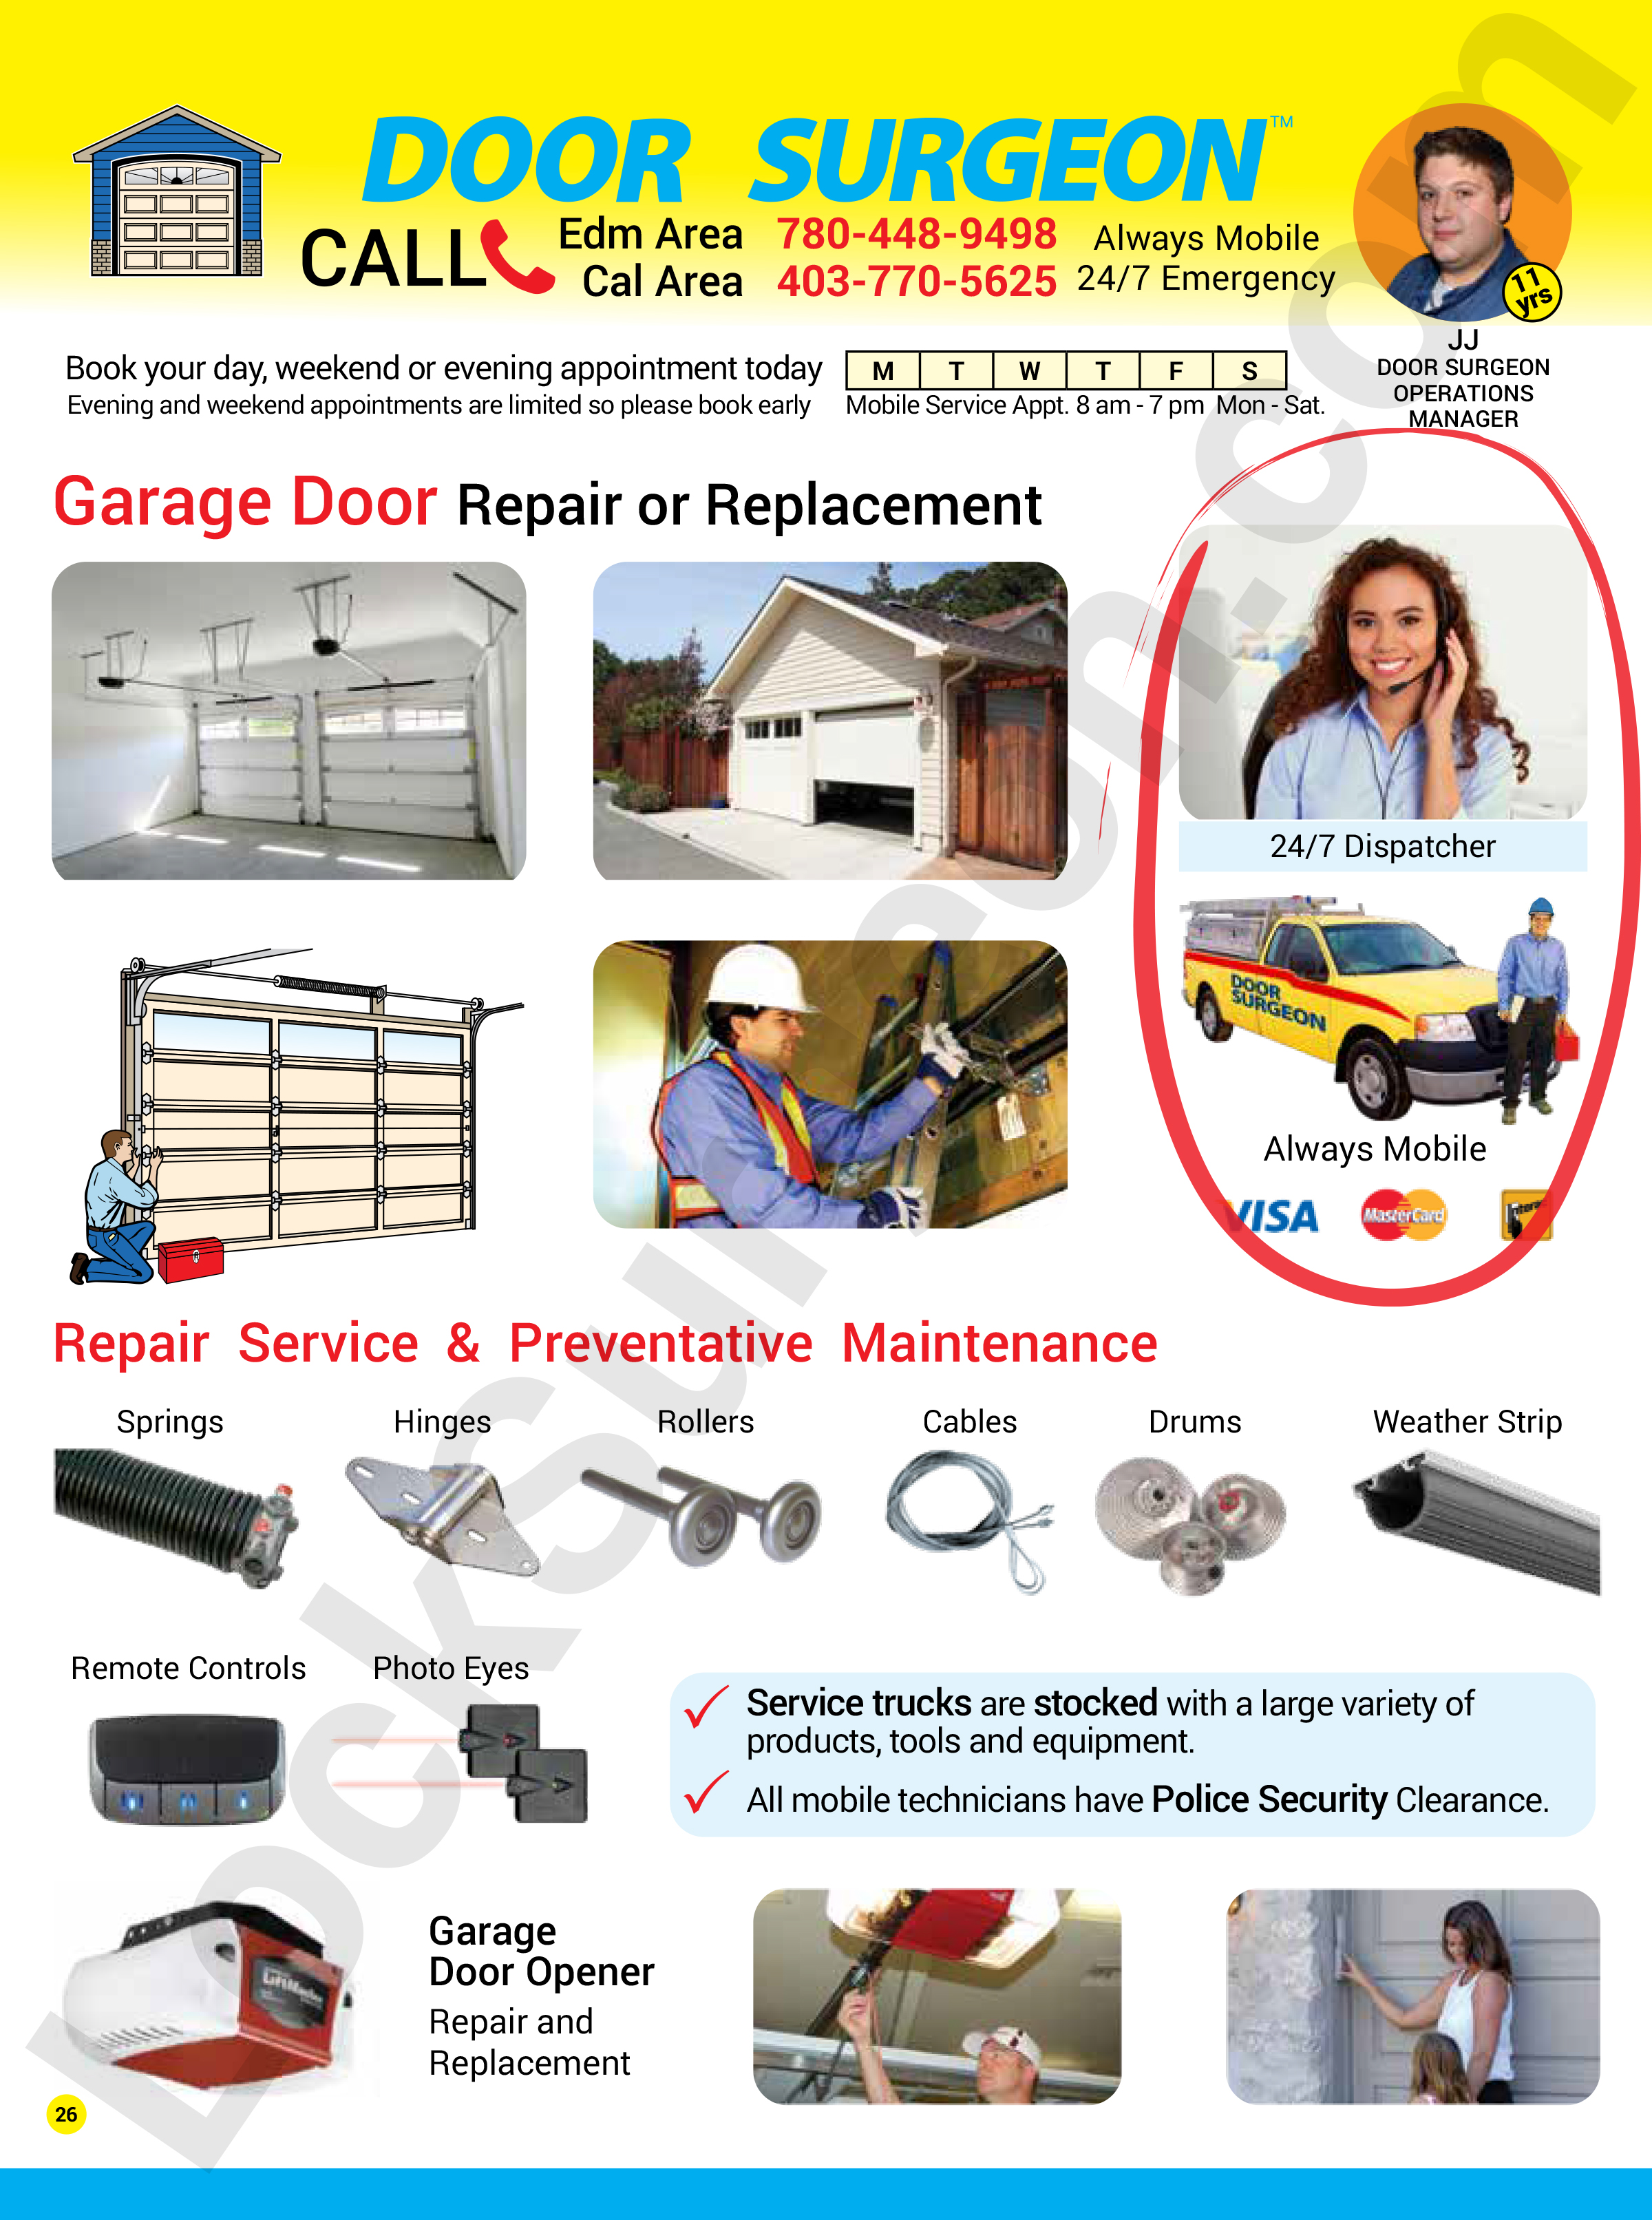 Lock Surgeon and Door Surgeon garage door repair or replacement services by trained, professional, expert garage door repair technicians.